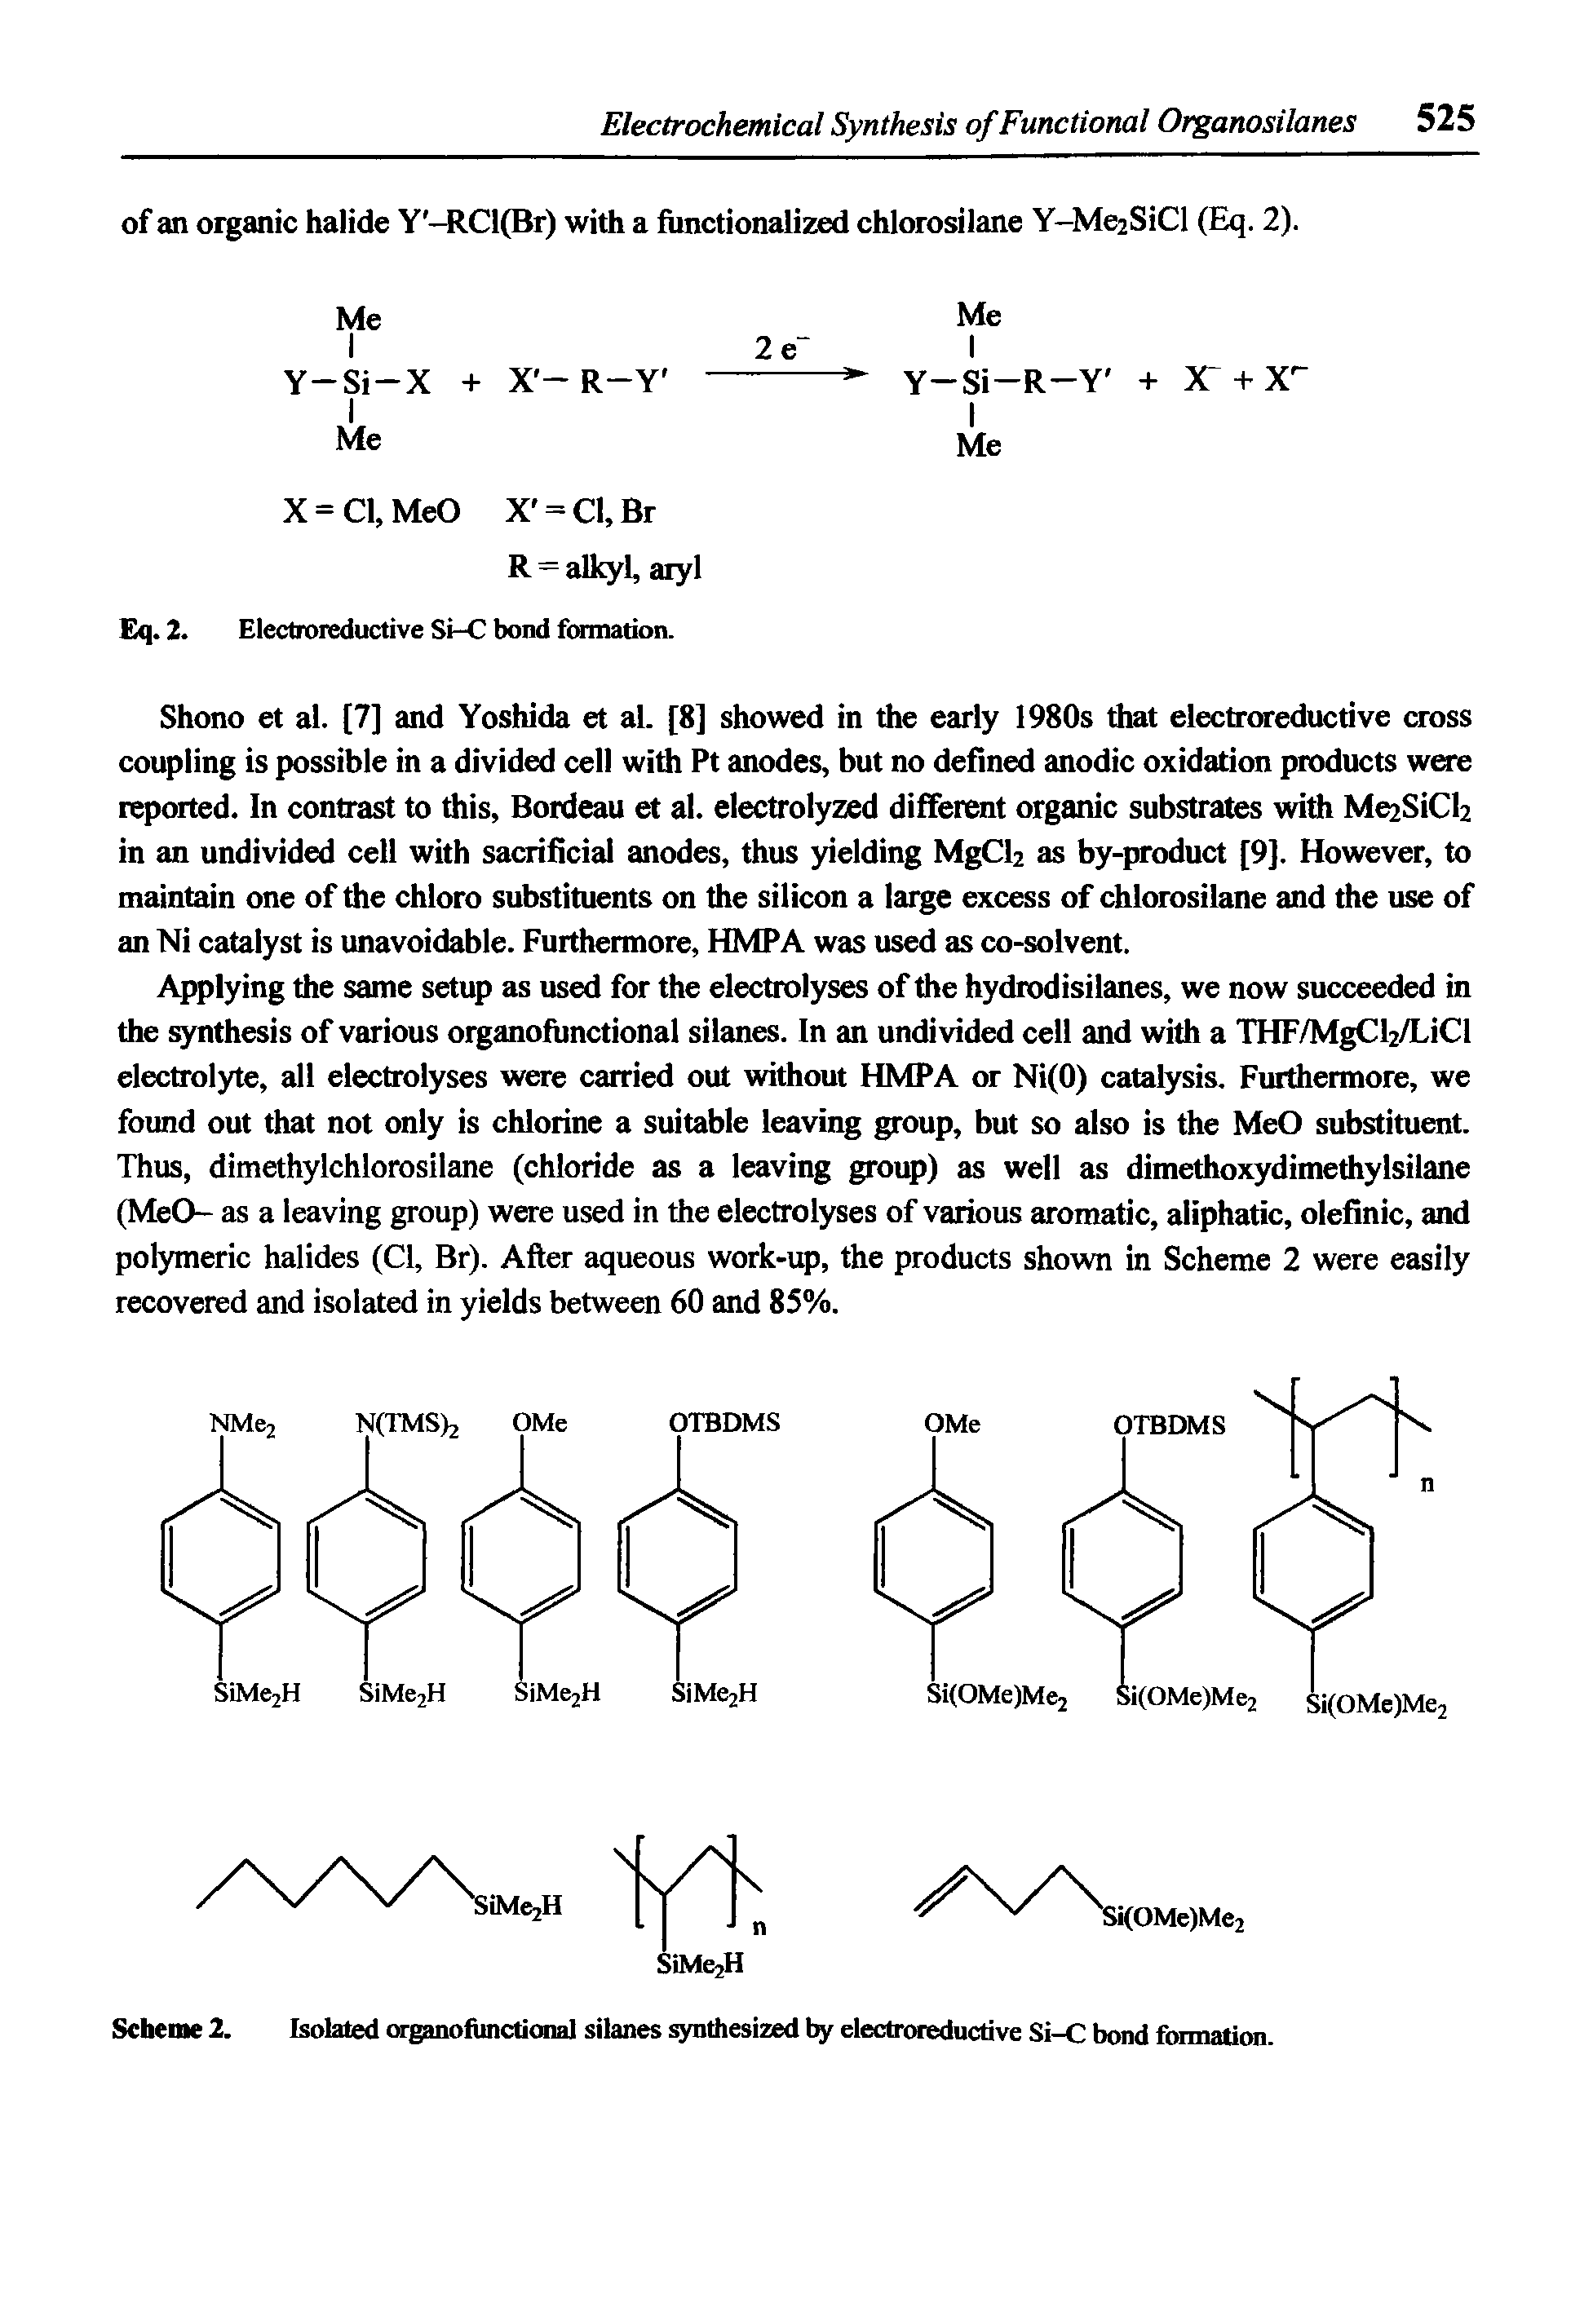 Scheme 2. Isolated organofunctional silanes synthesized electroreductive Si-C bond formation.